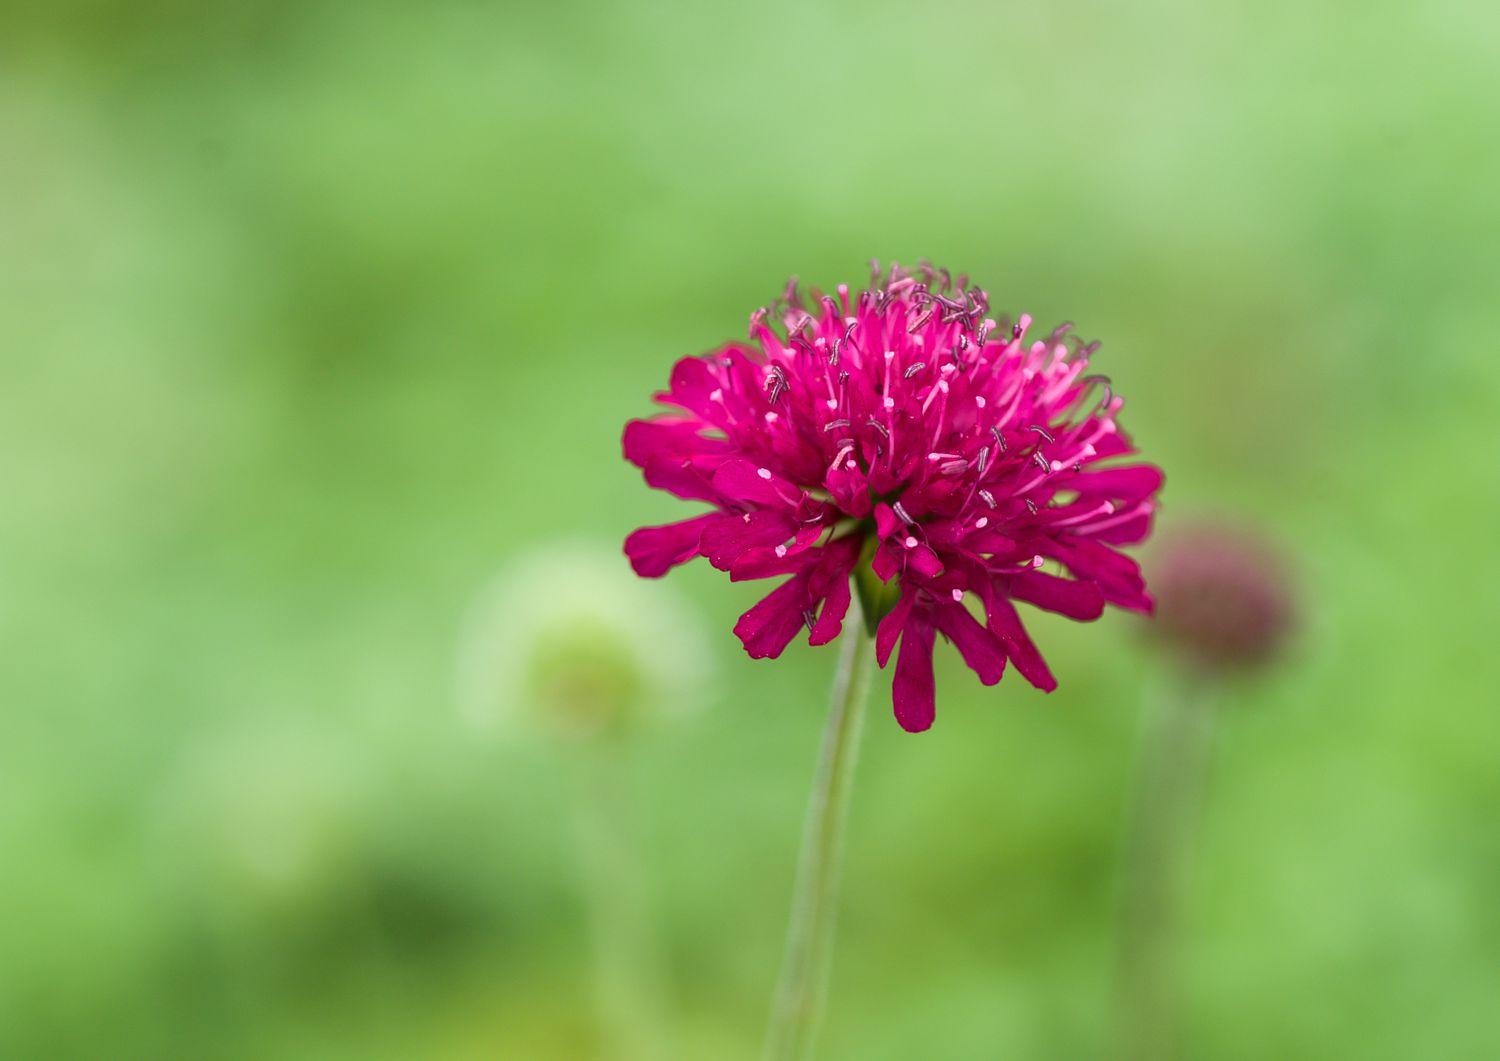 Knautia stem with magenta flower closeup